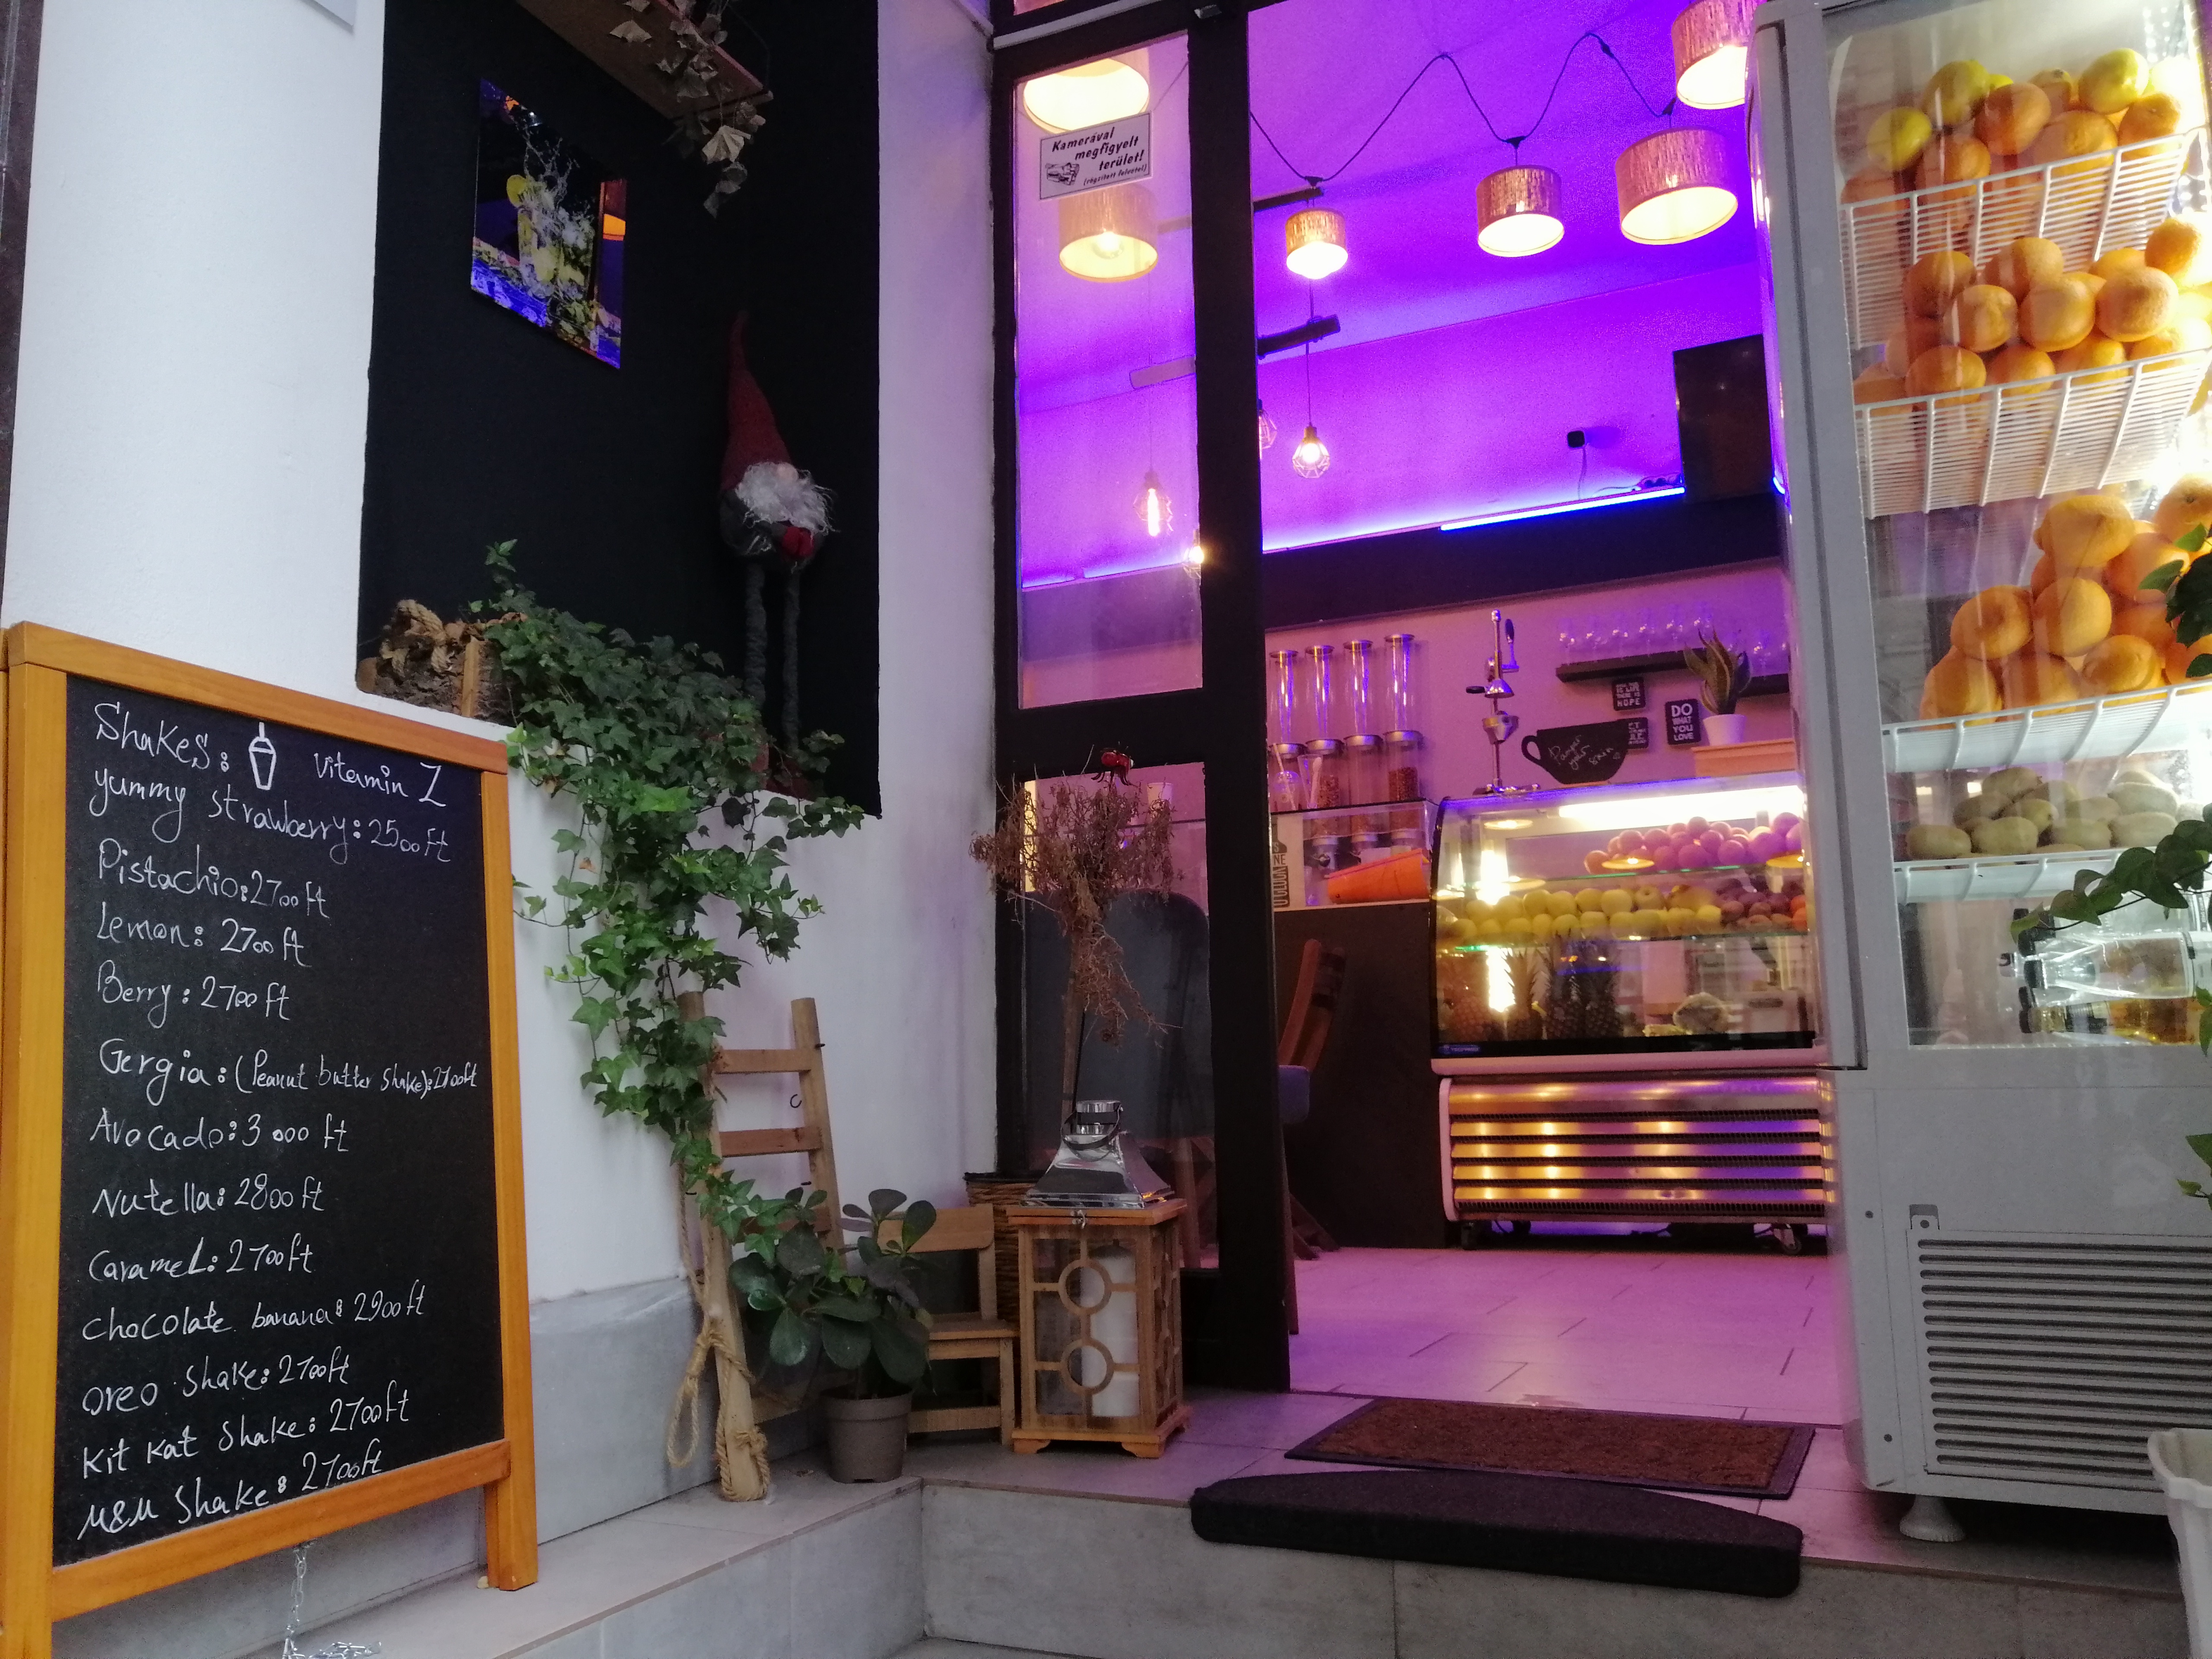 Hangulatos kis lébár nyílt a Dob utcában – Vitamin Z smoothie- és gyümölcslébár